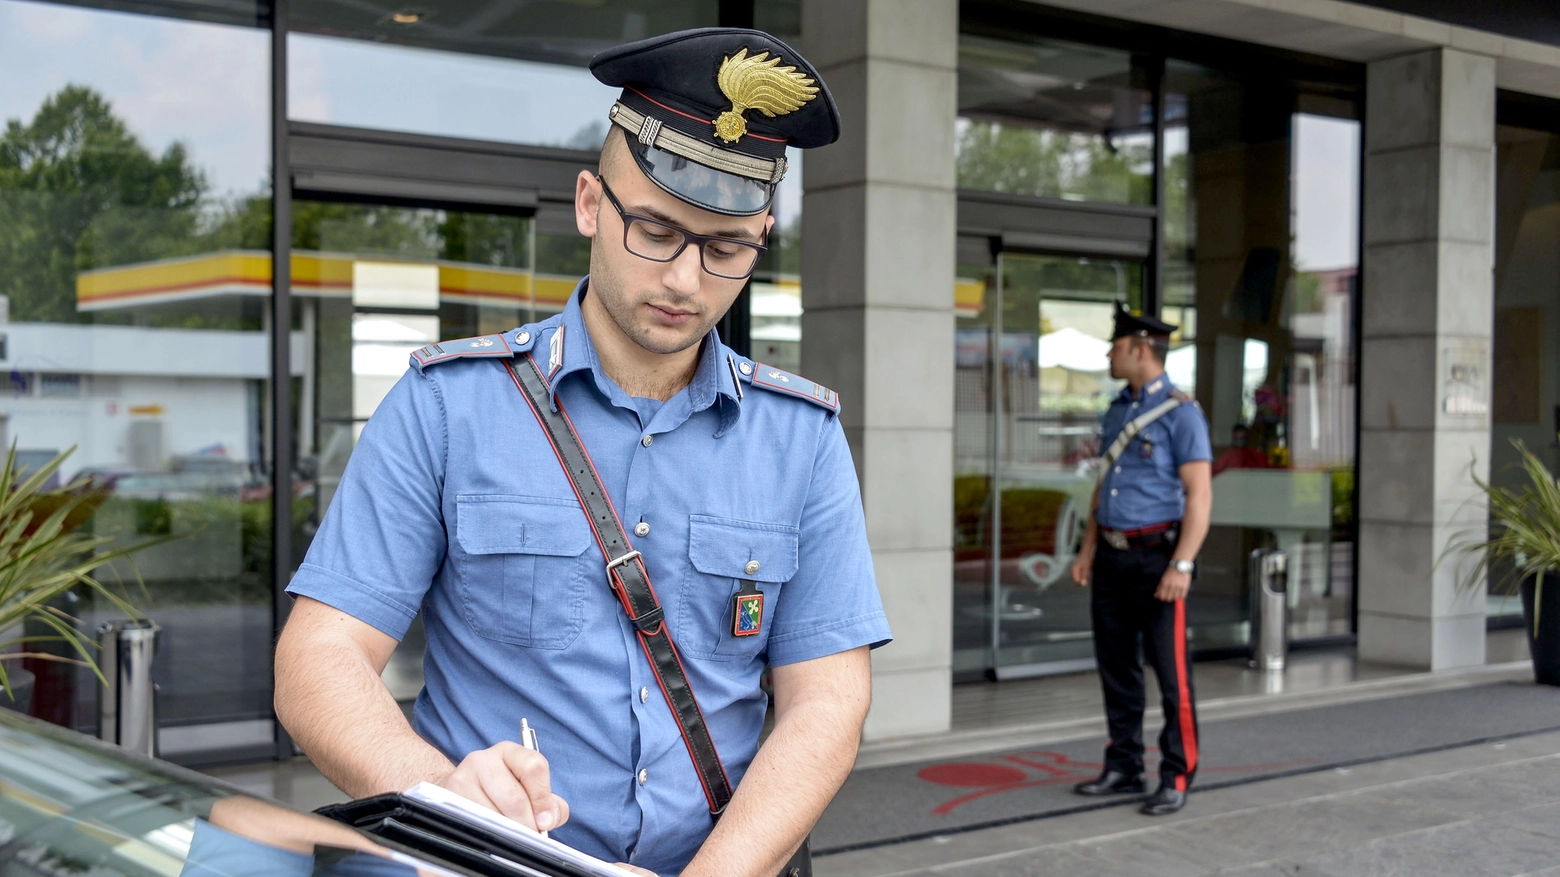 I carabinieri di Bresso hanno scoperto l'arma durante un controllo di routine